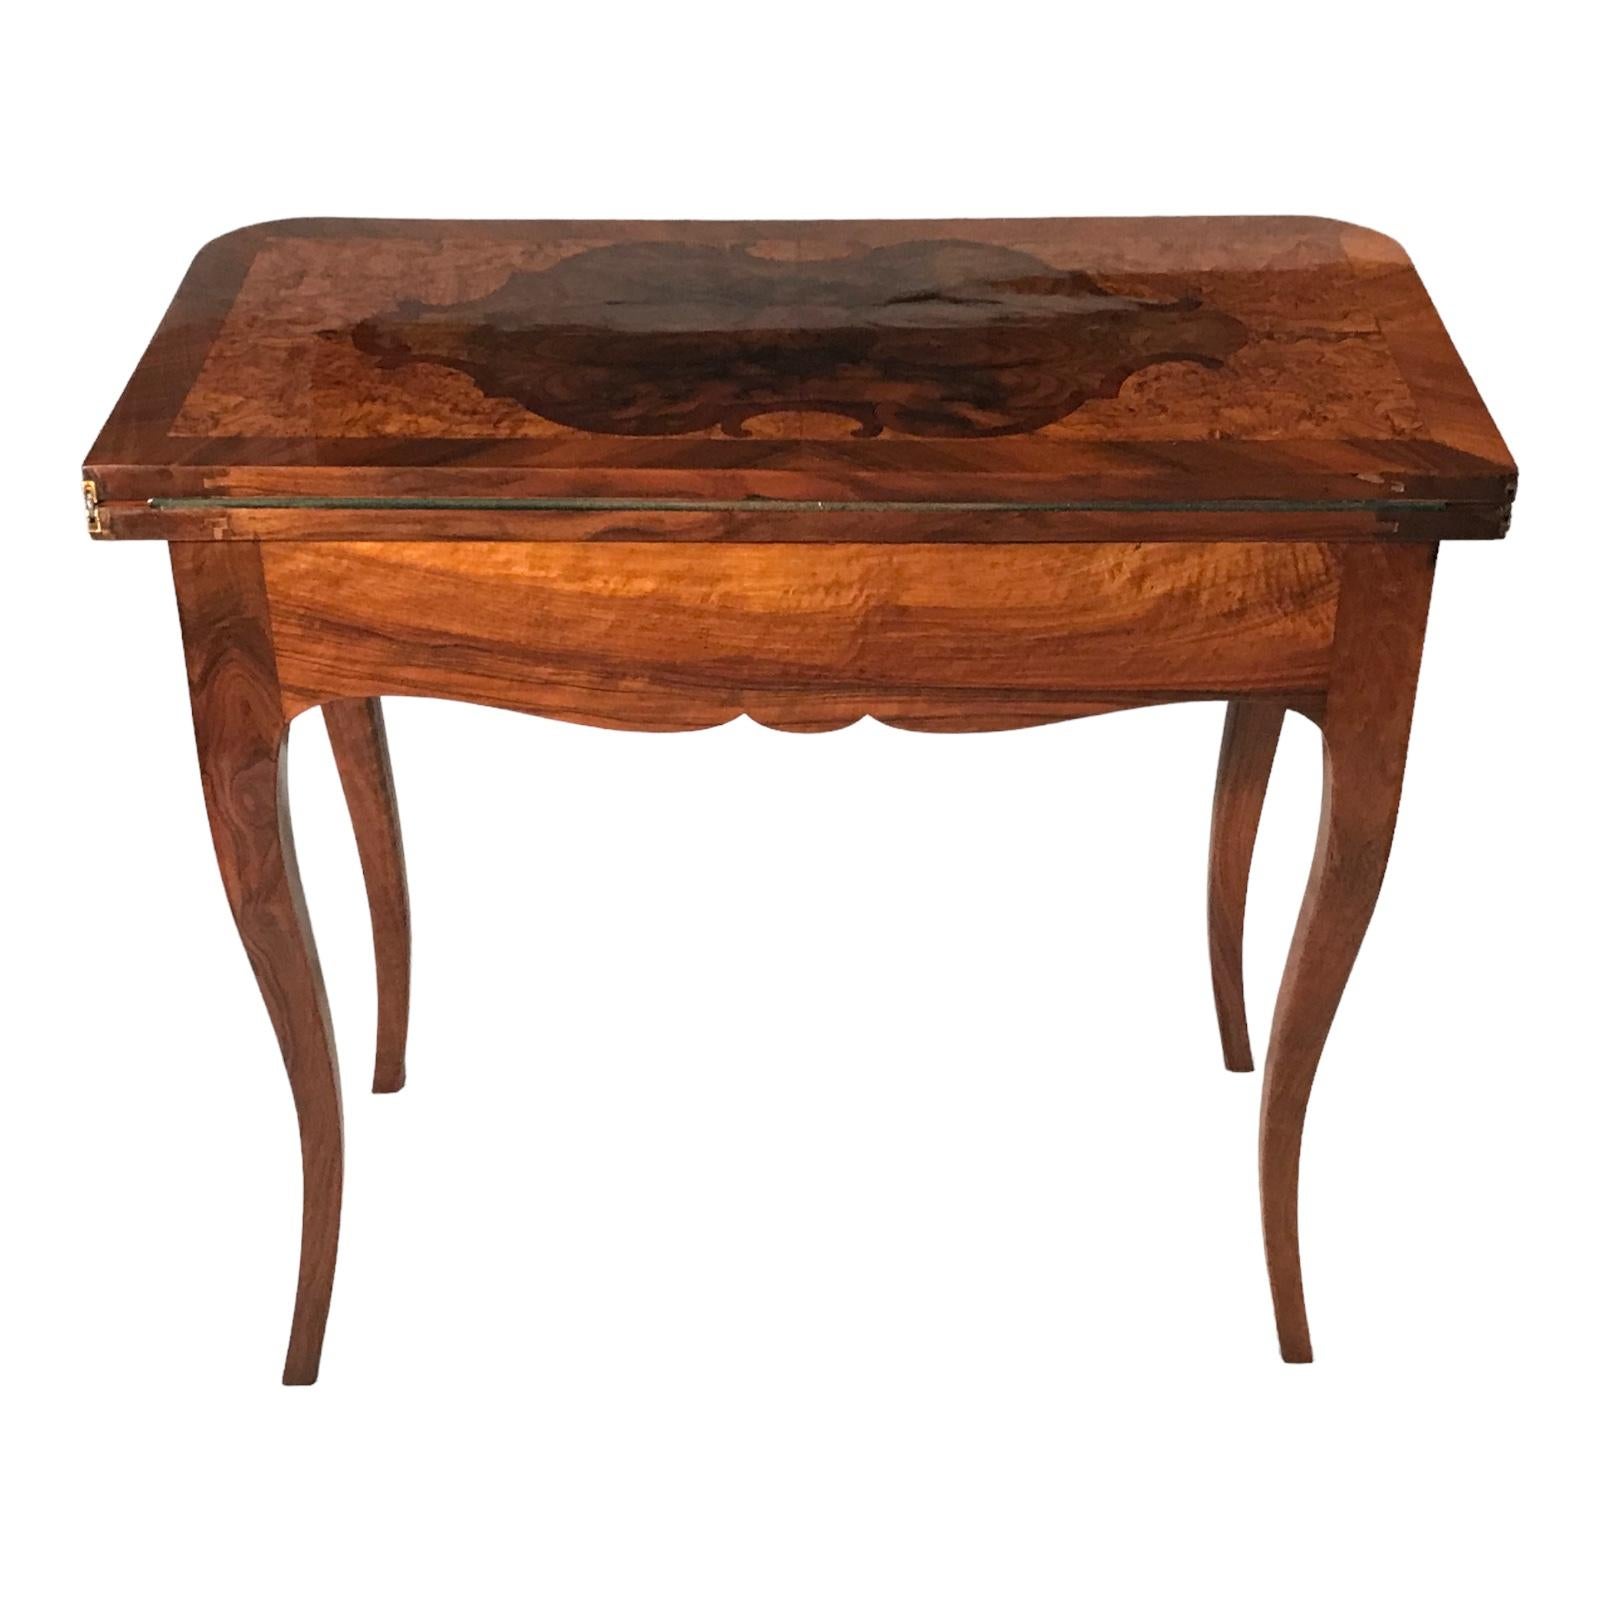 Dieser außergewöhnliche barocke Spieltisch stammt aus Süddeutschland und wird auf ca. 1770 datiert. Das atemberaubende Walnussfurnier trägt zu seiner optischen Attraktivität bei. Die Tischplatte ist mit komplizierten Mustern aus Ahorn- und